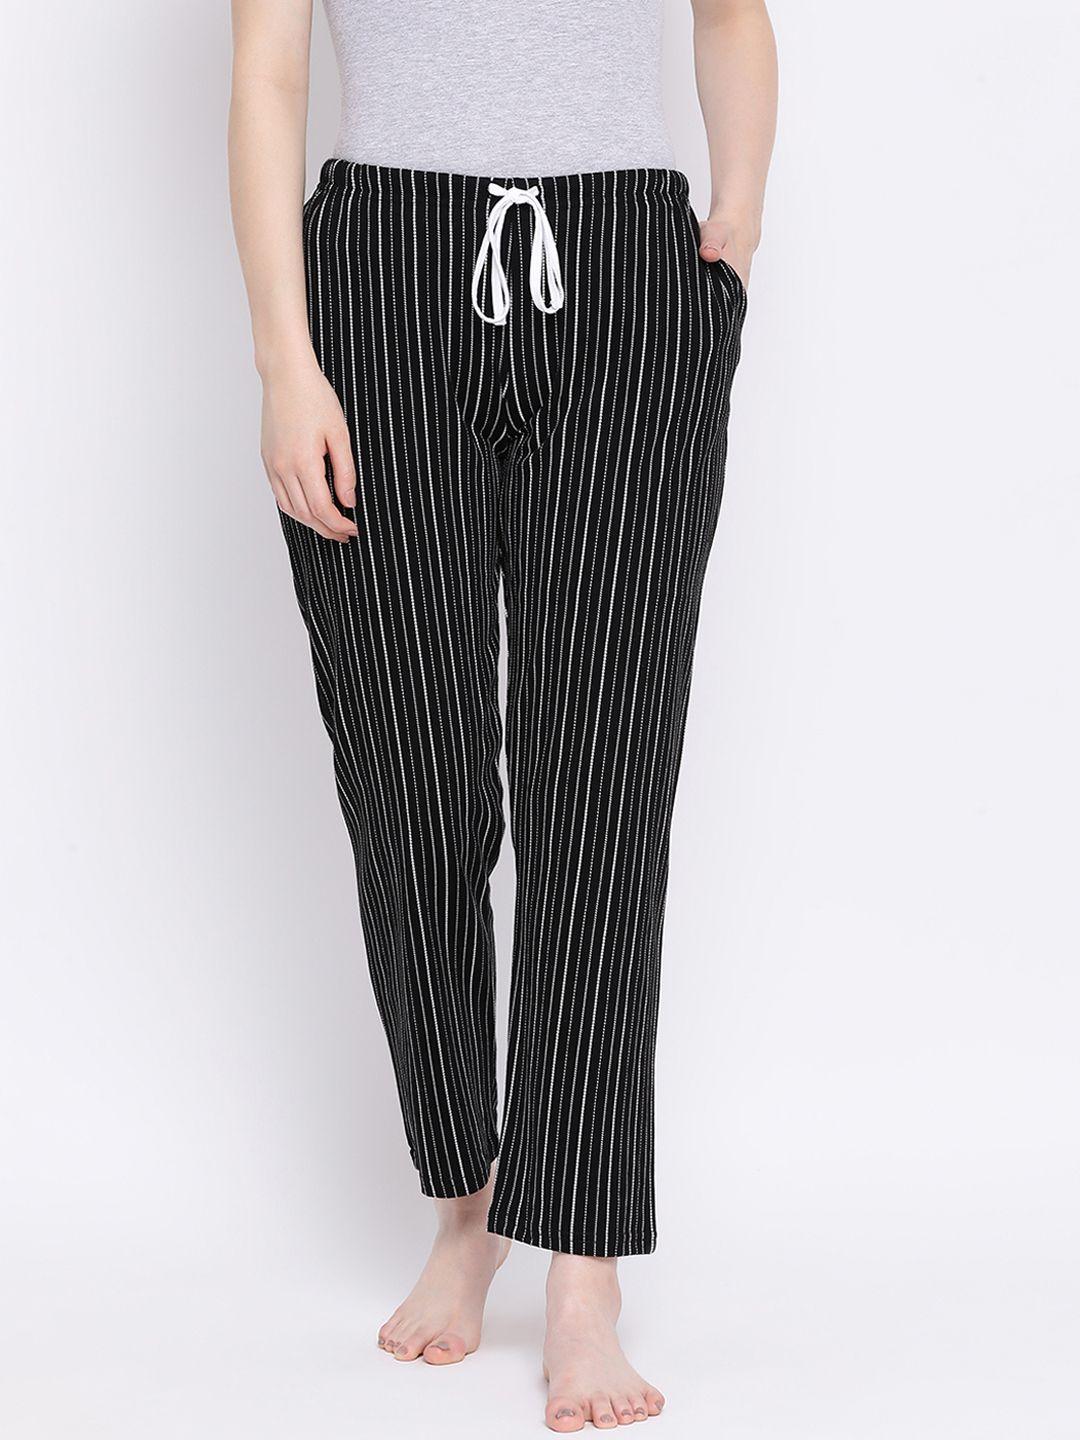 kanvin women black & white striped lounge pants